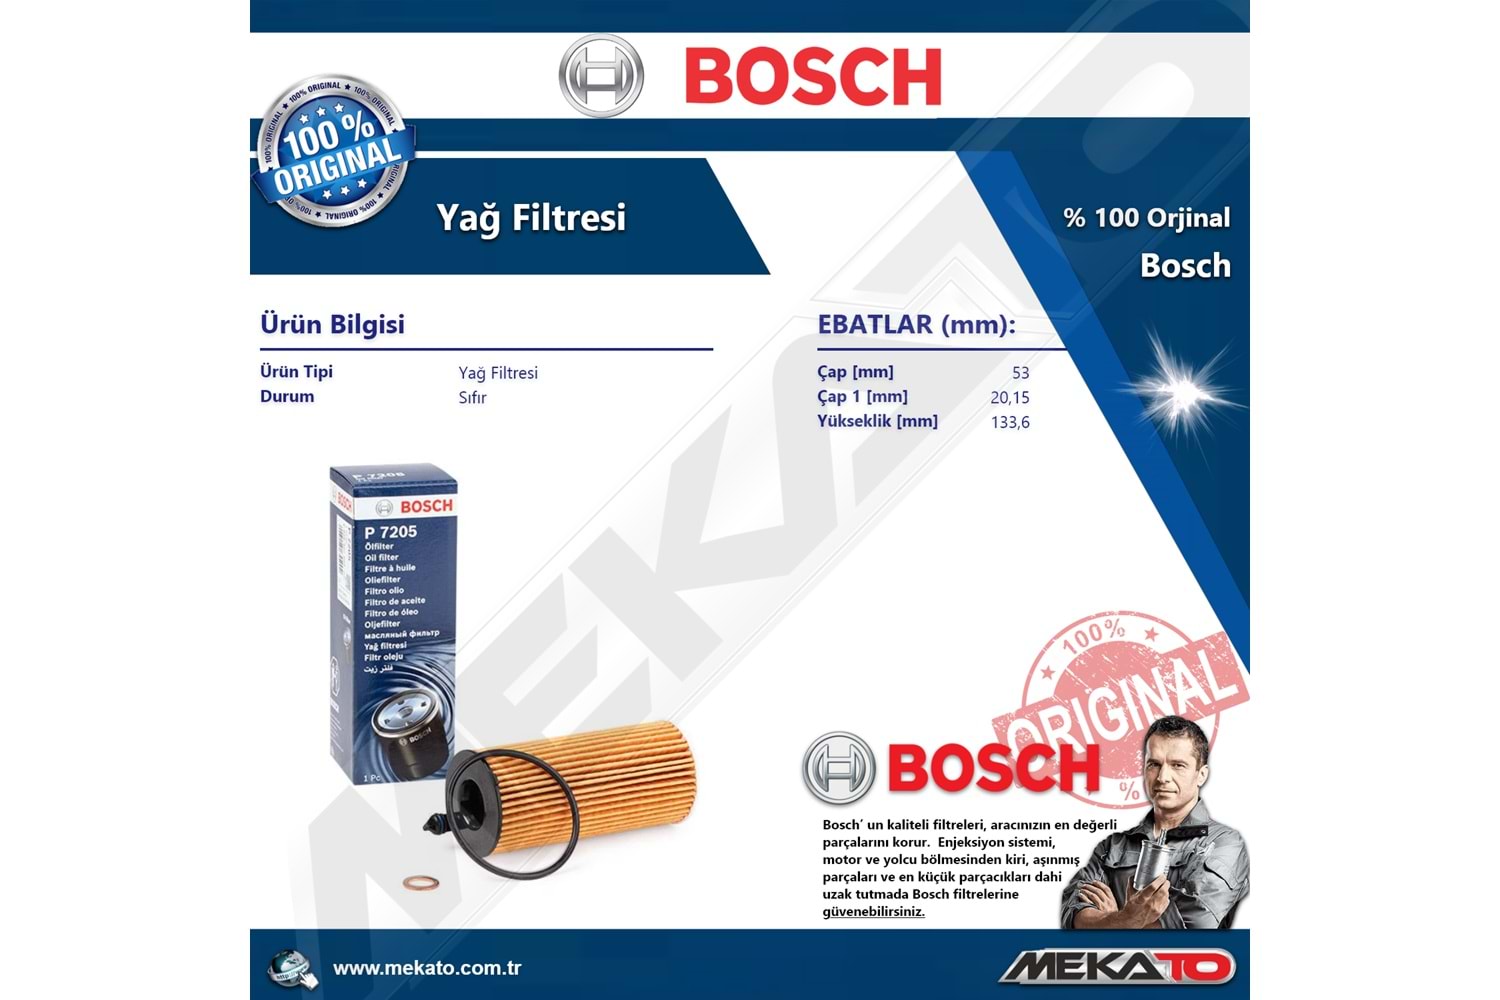 Bmw 1 Seri F20 120 d B47 4 Lü Bosch Filtre Seti Karbonlu 2015-2019